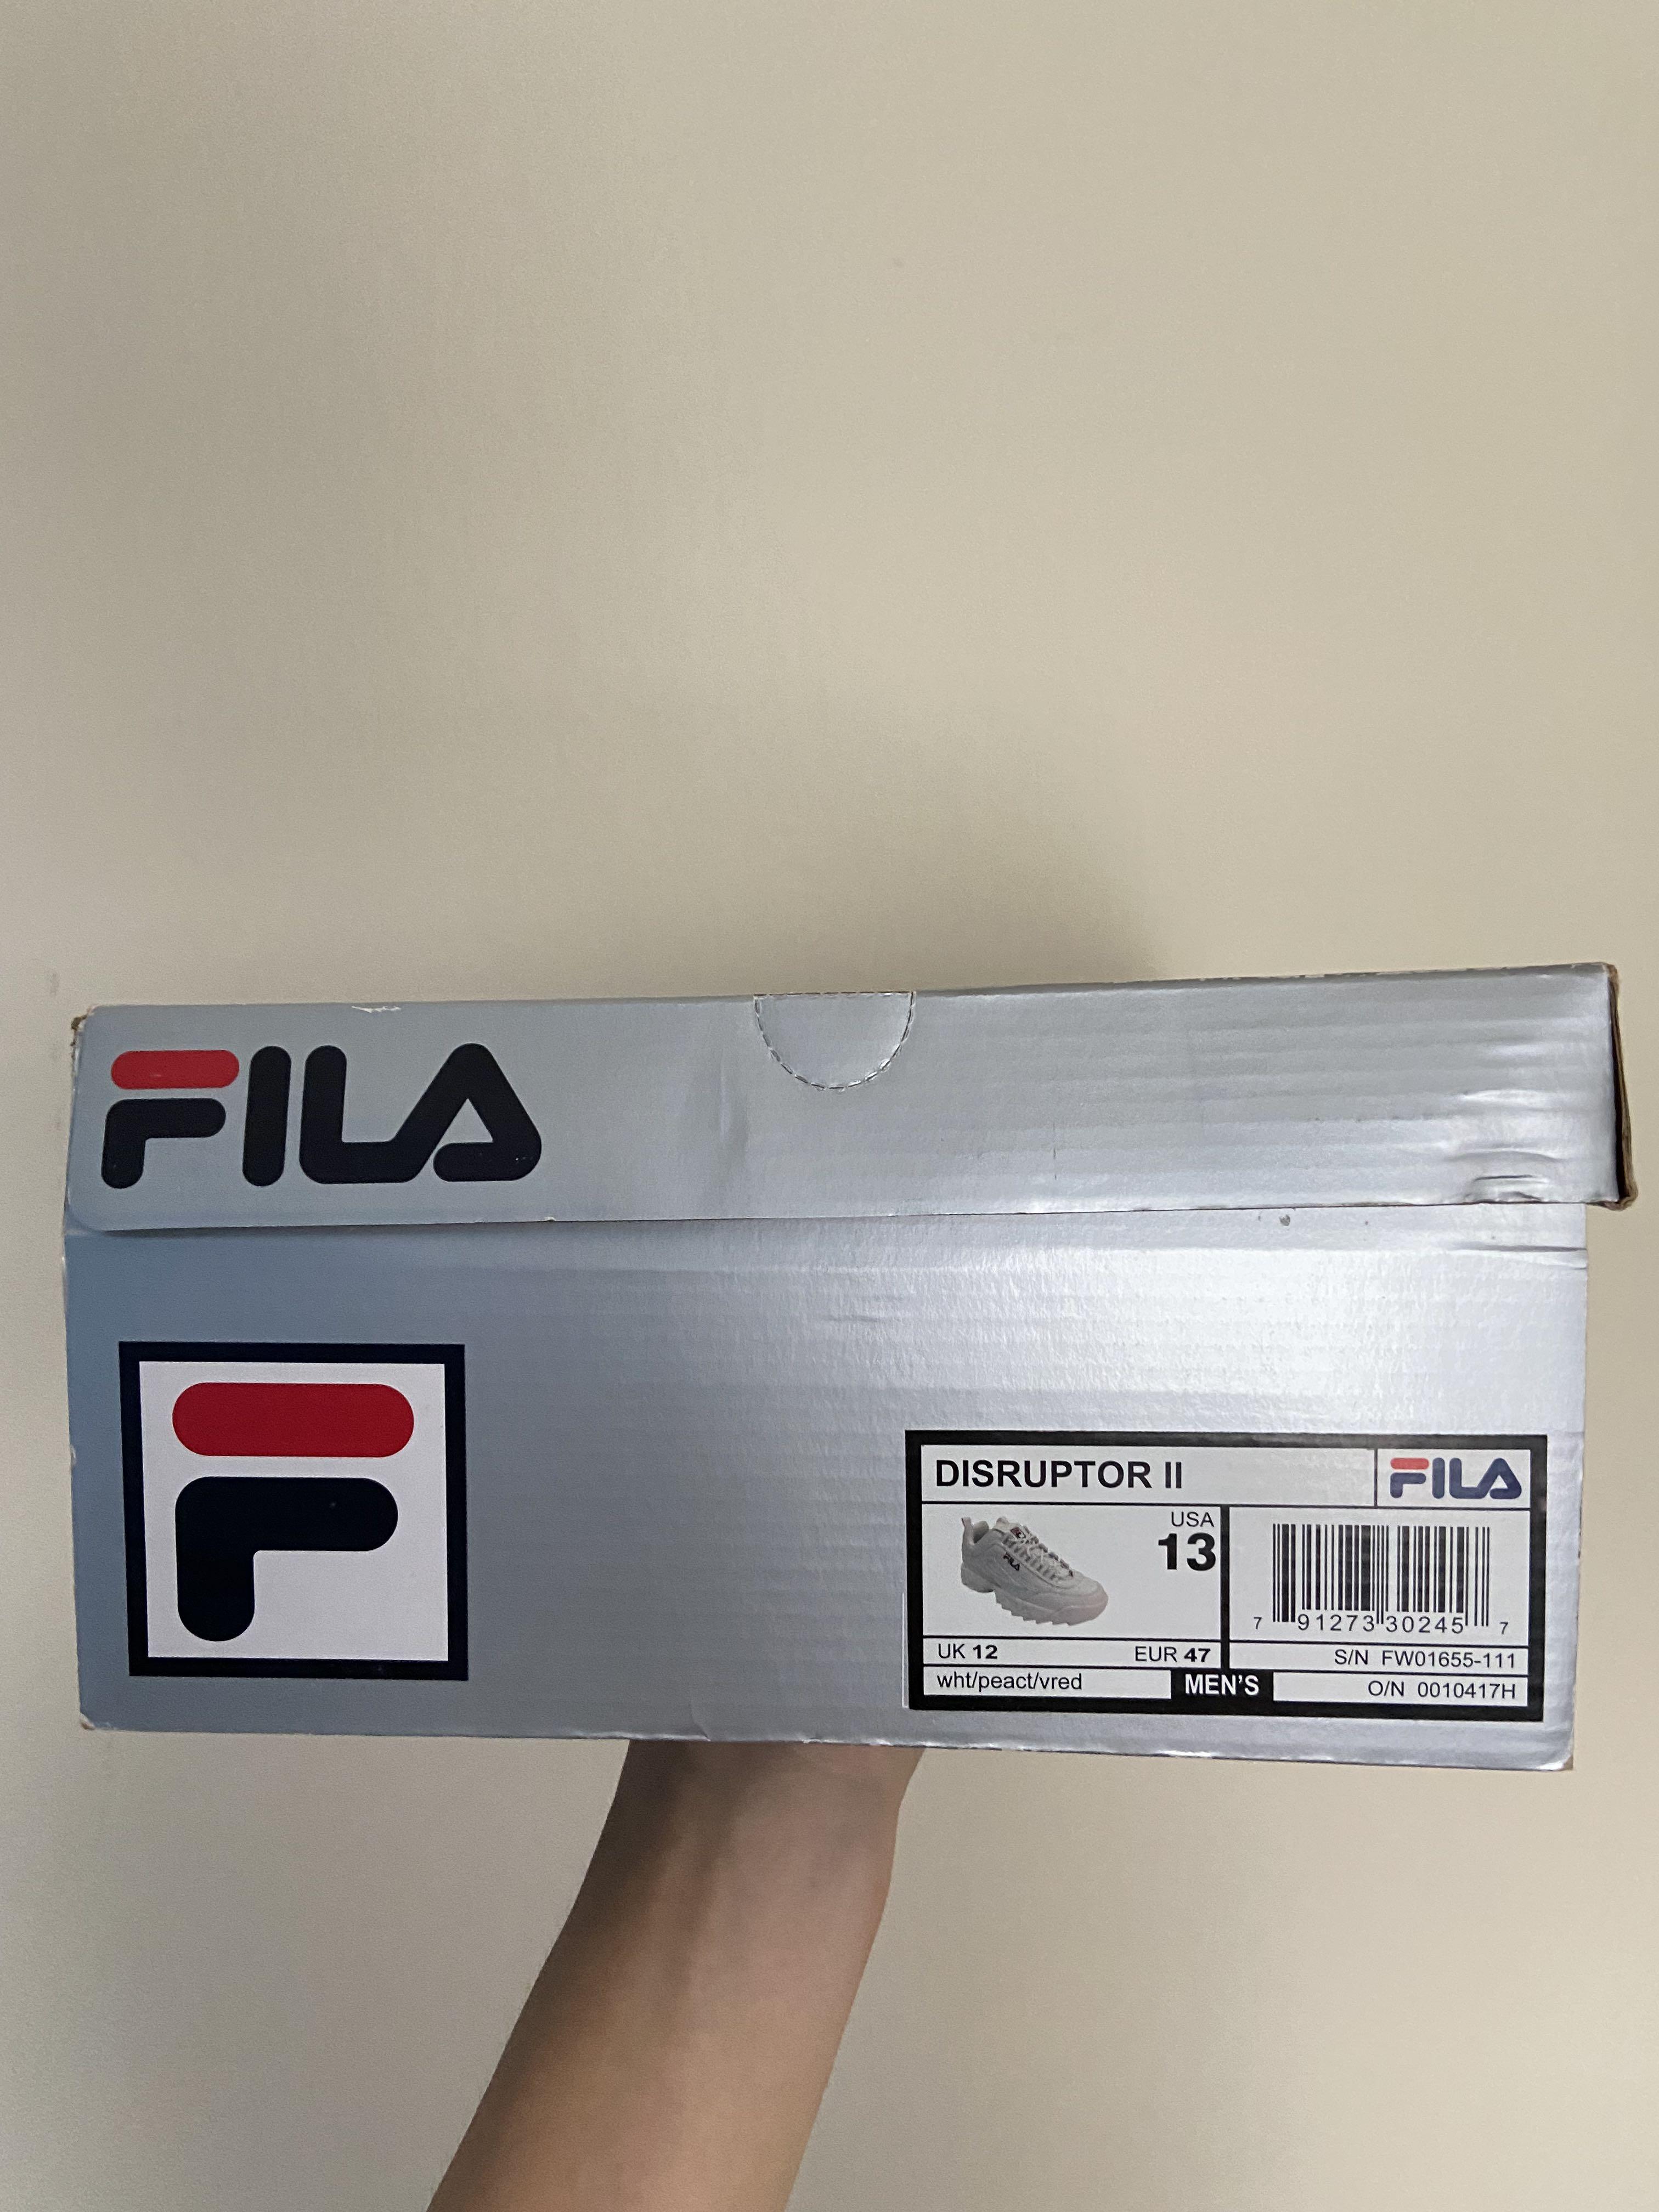 Fila Disruptor II white/peact/vred FW01655-111 MEN Size